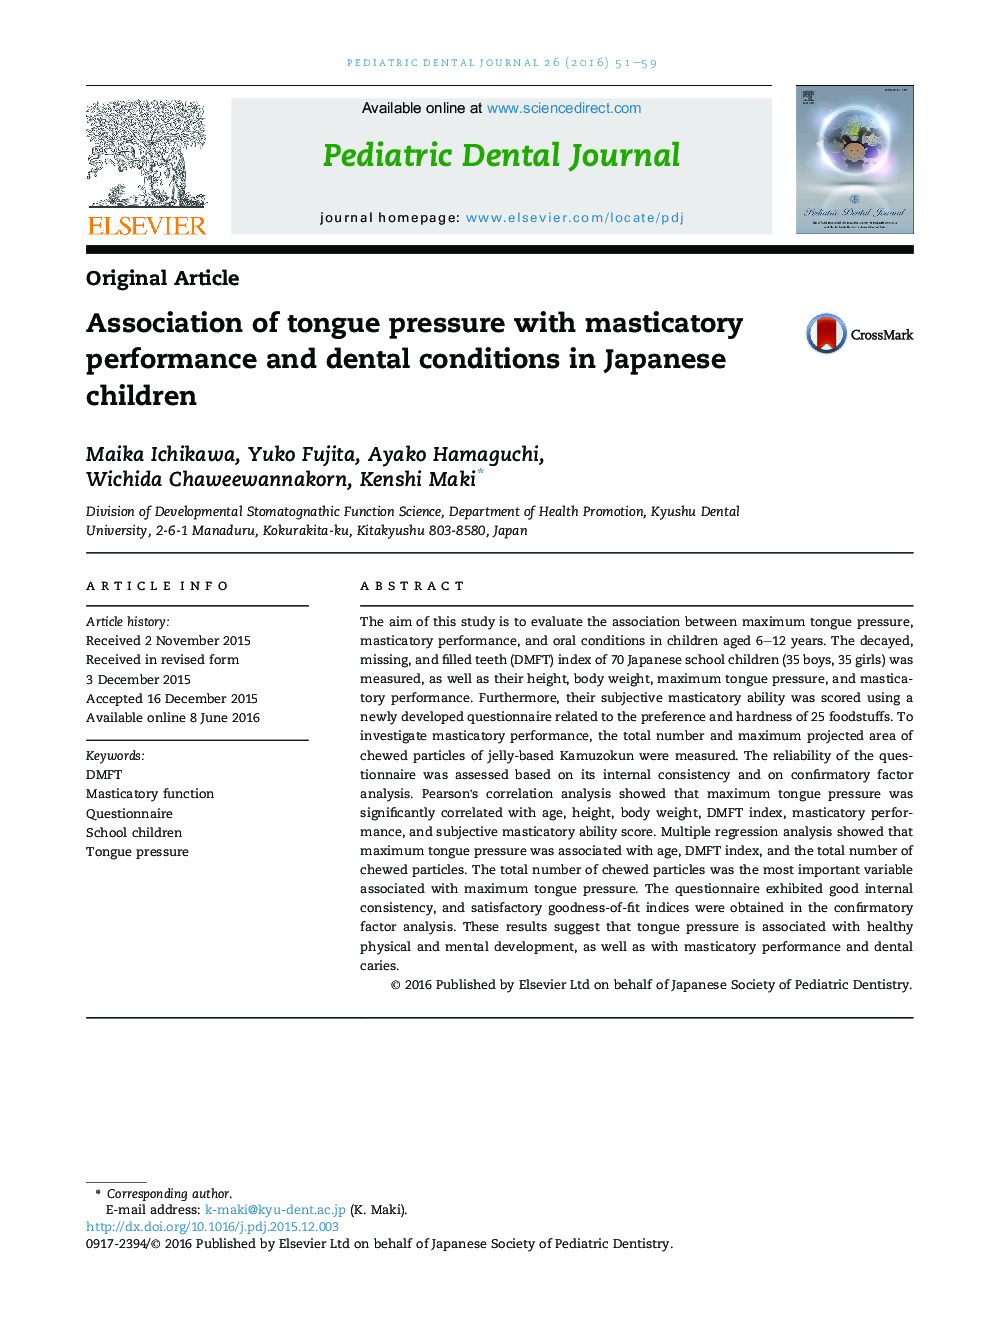 انجمن فشار زبان با عملکرد جراحی و شرایط دندانپزشکی در کودکان ژاپنی 